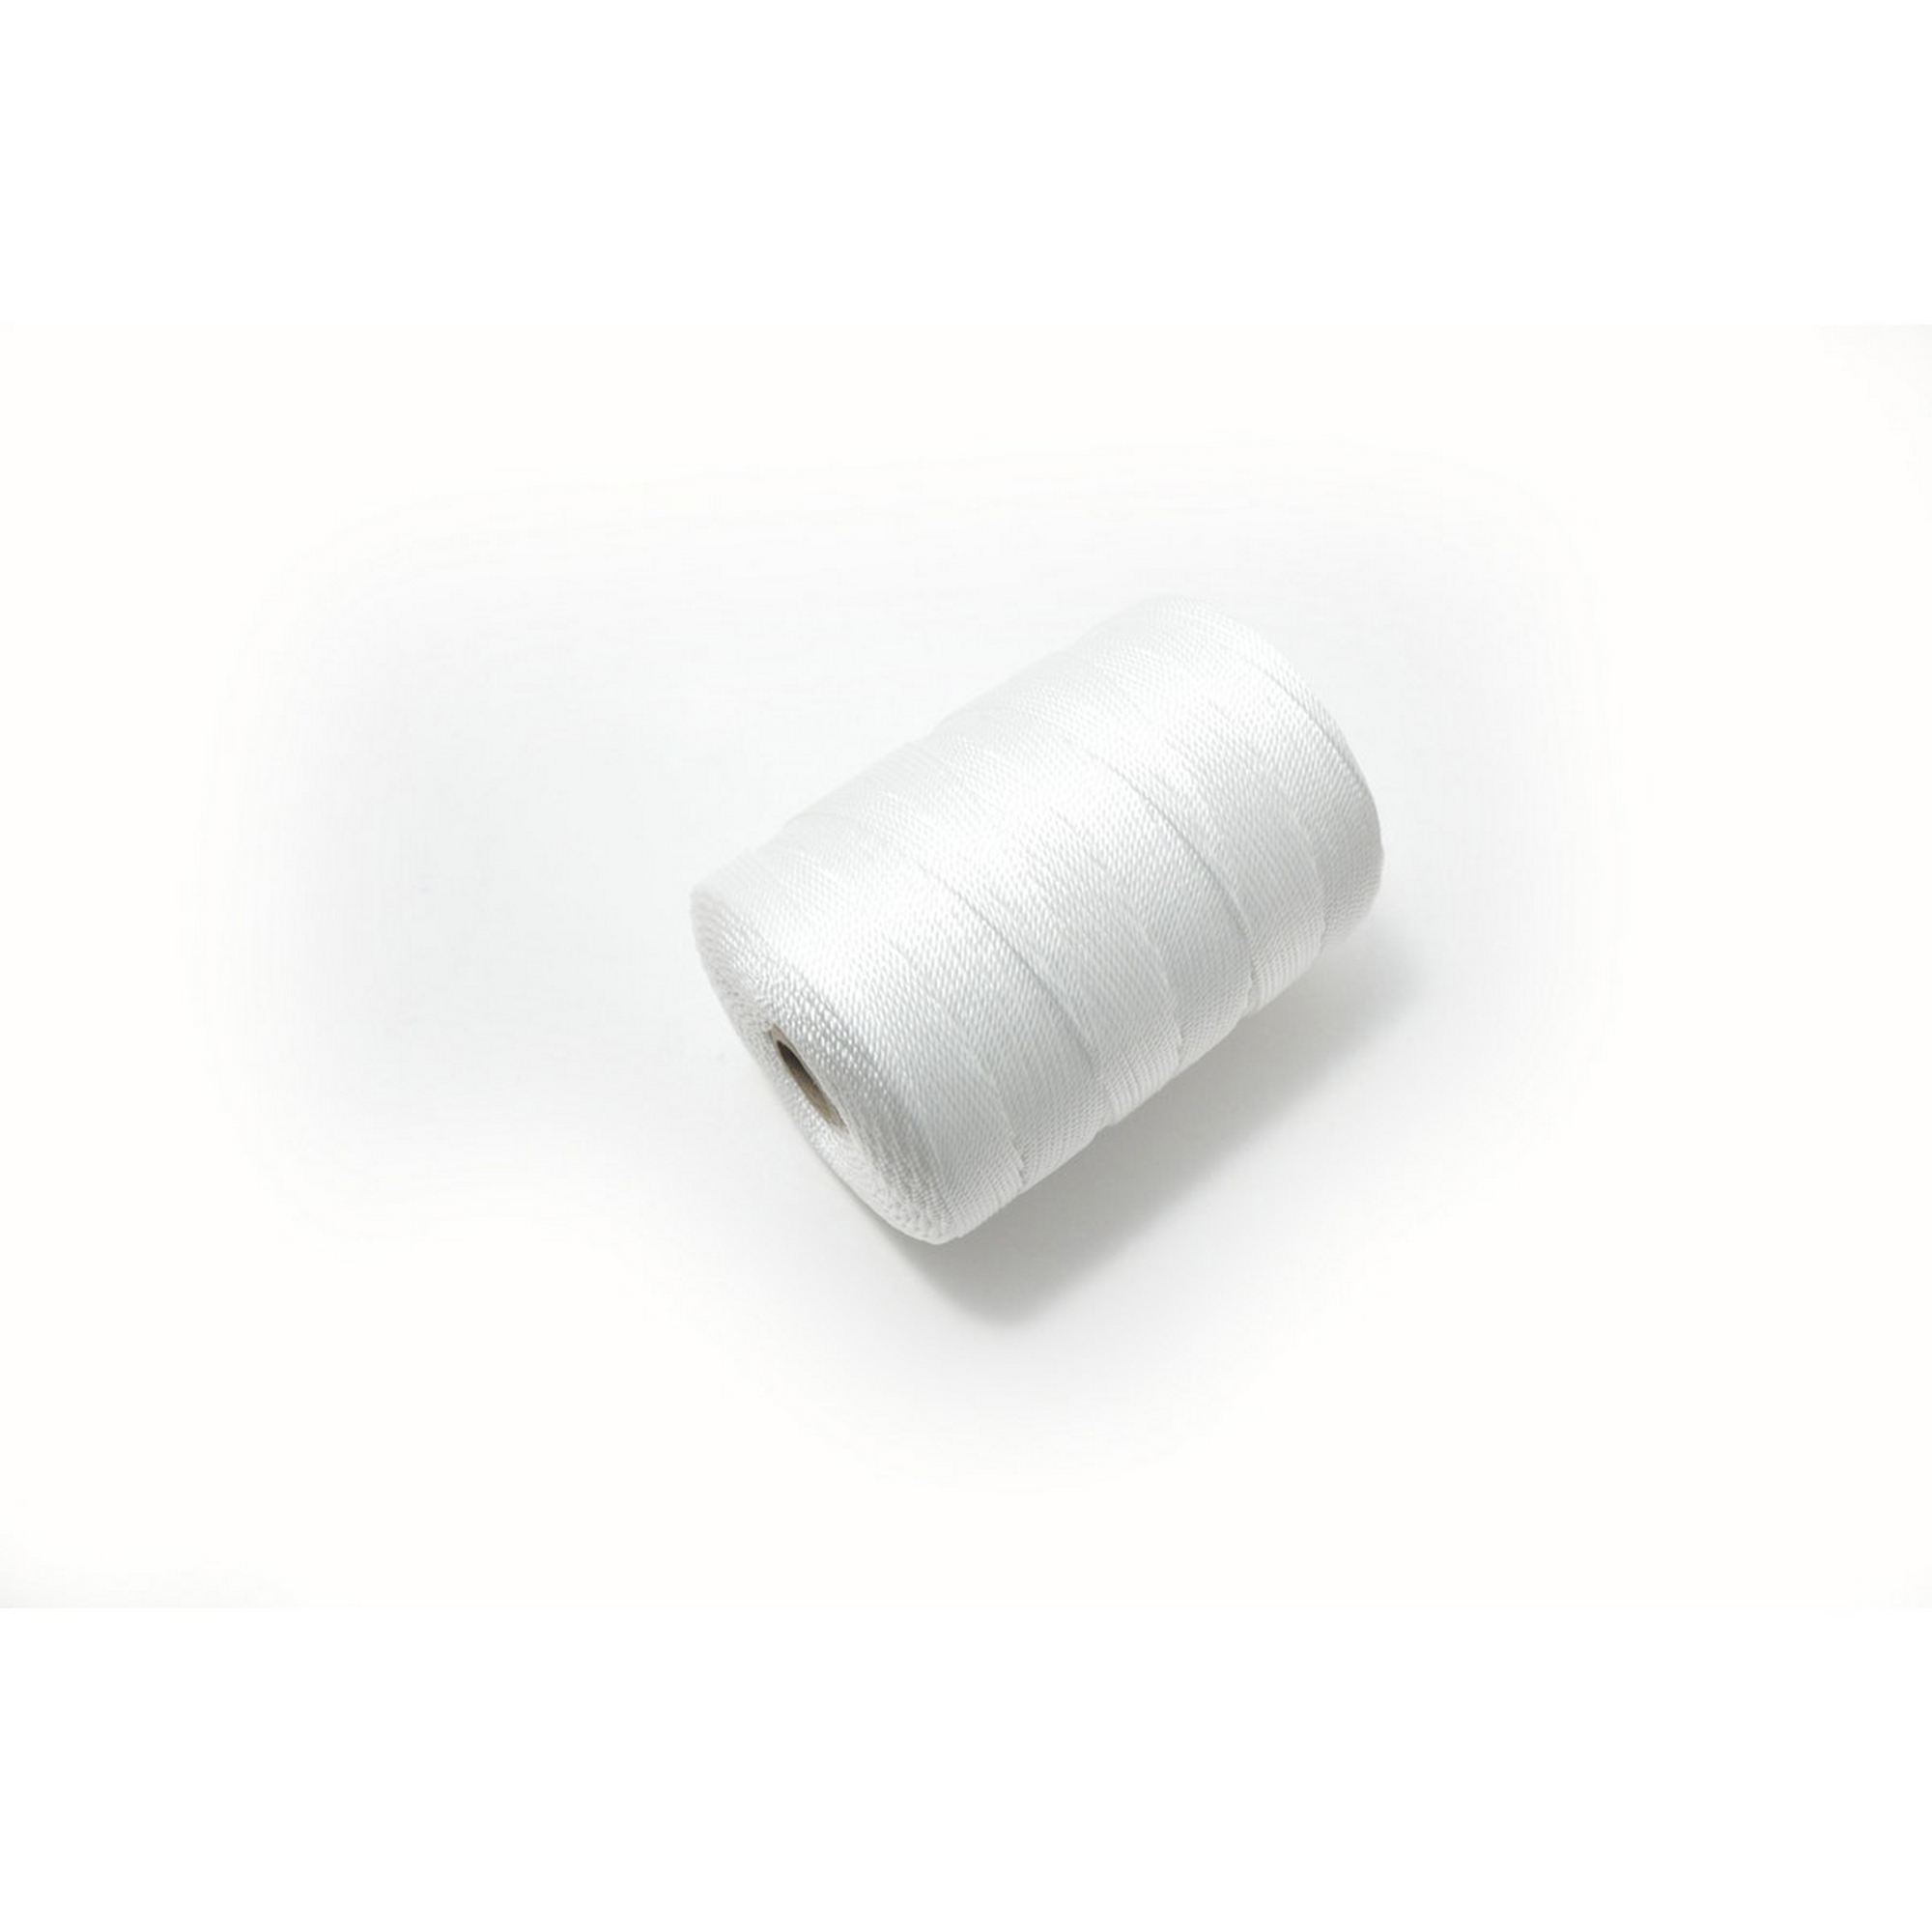 Polypropylen-Seil gezwirnt weiß Ø 1,5 mm x 1200 m + product picture